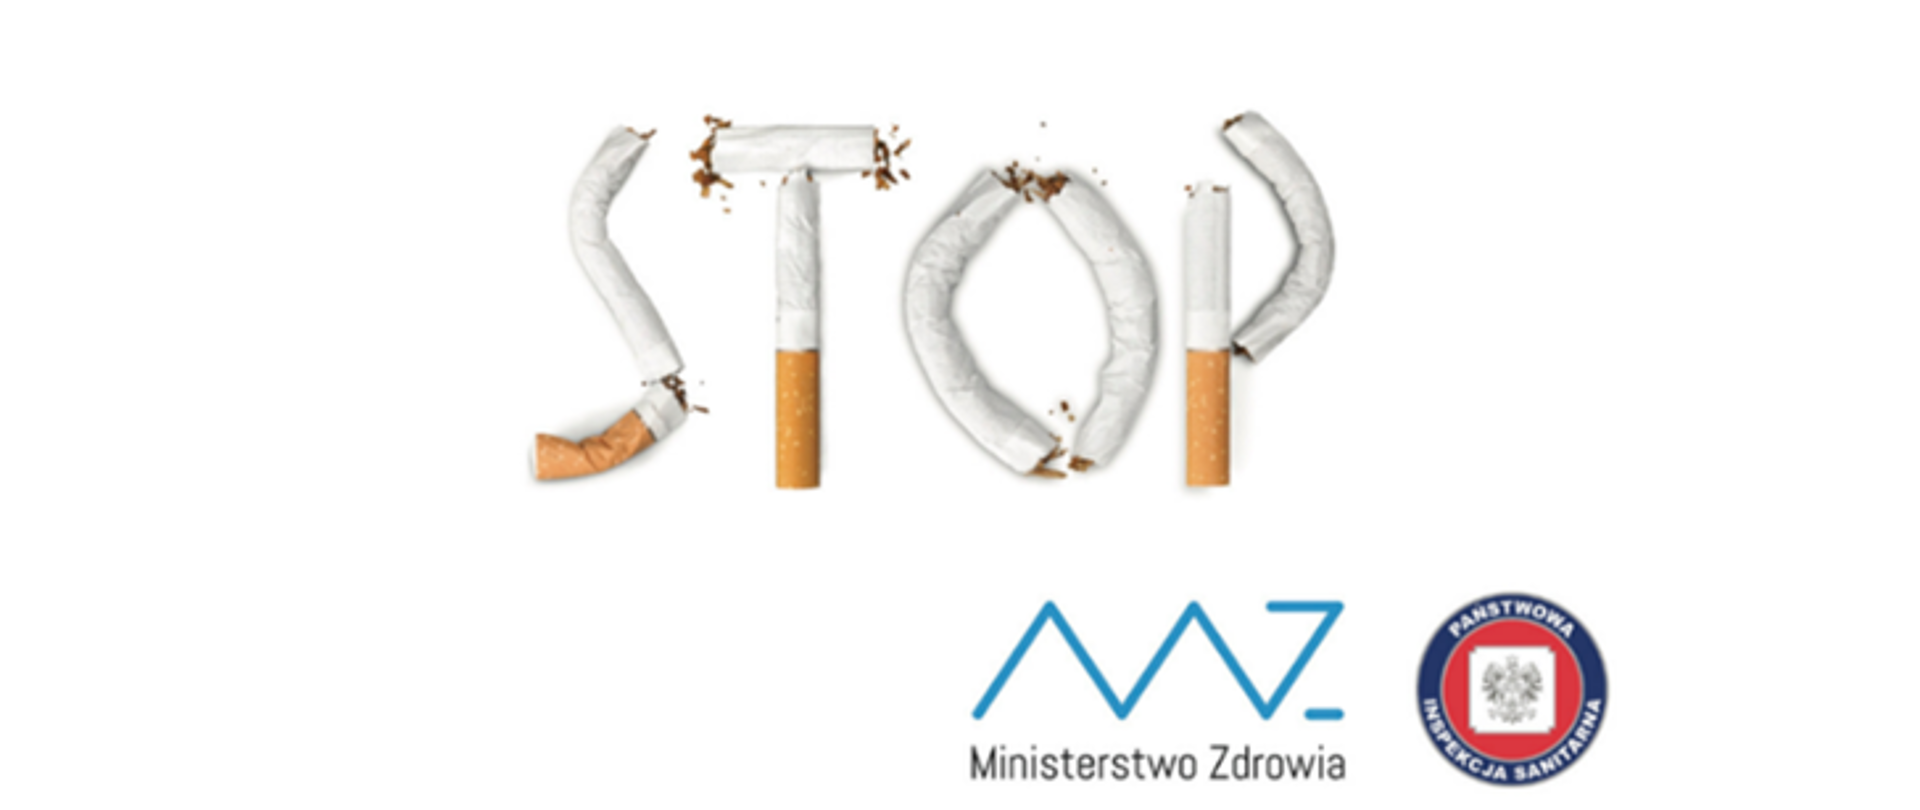 Stop_palenie